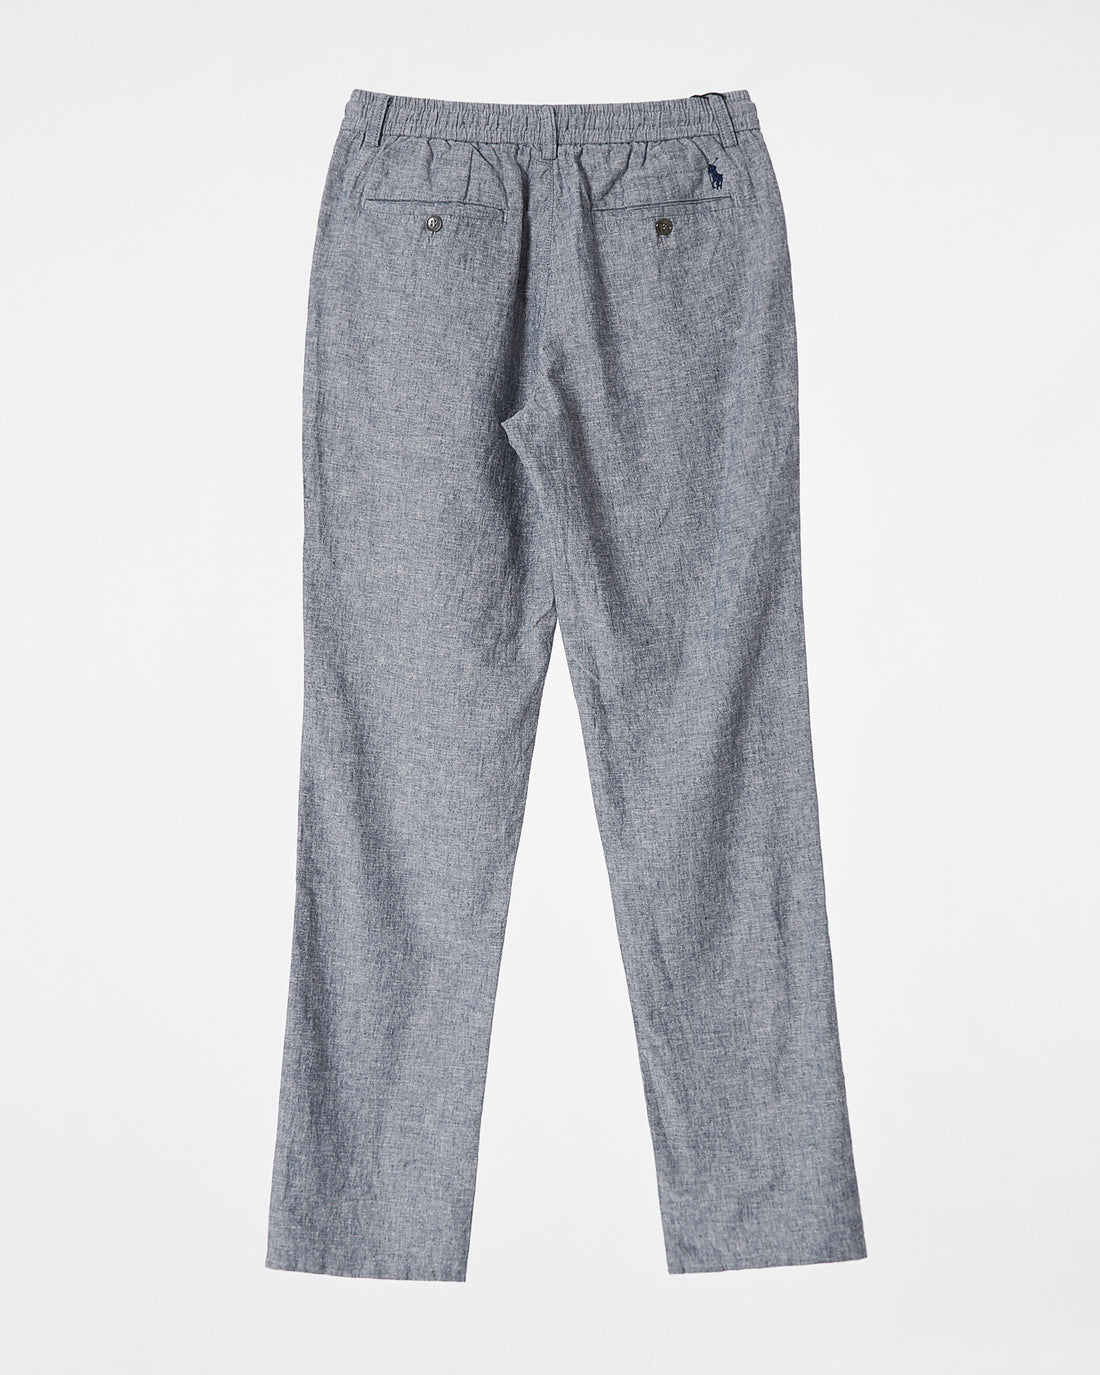 RL Cotton Regular Fit Men Grey Pants 24.90